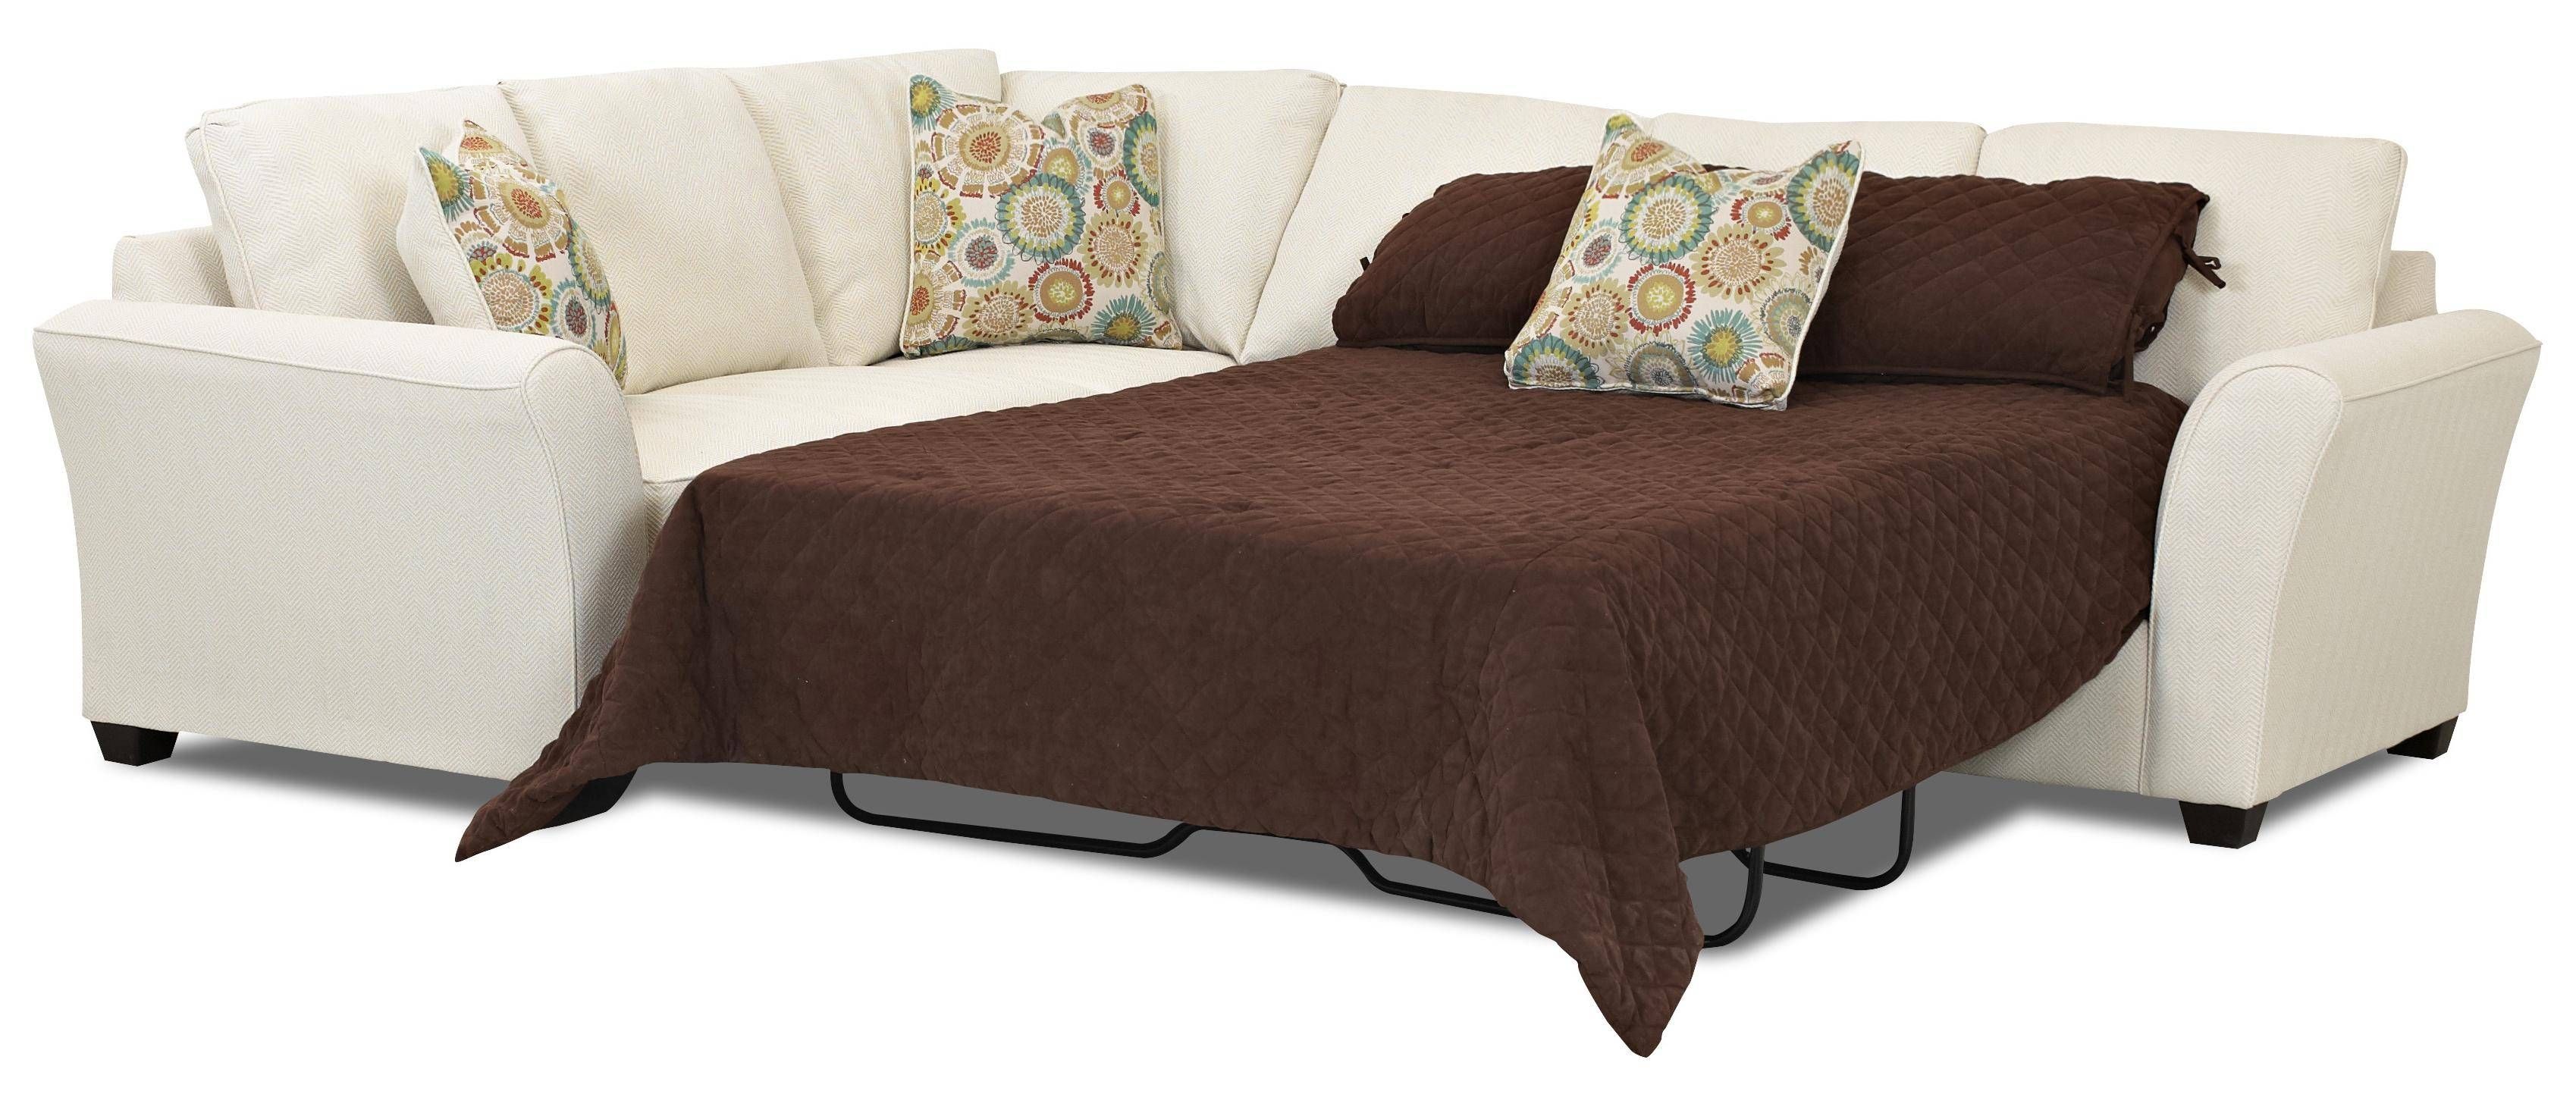 Sectional Sleeper Sofa | Winda 7 Furniture Intended For 3 Piece Sectional Sleeper Sofa (View 16 of 30)